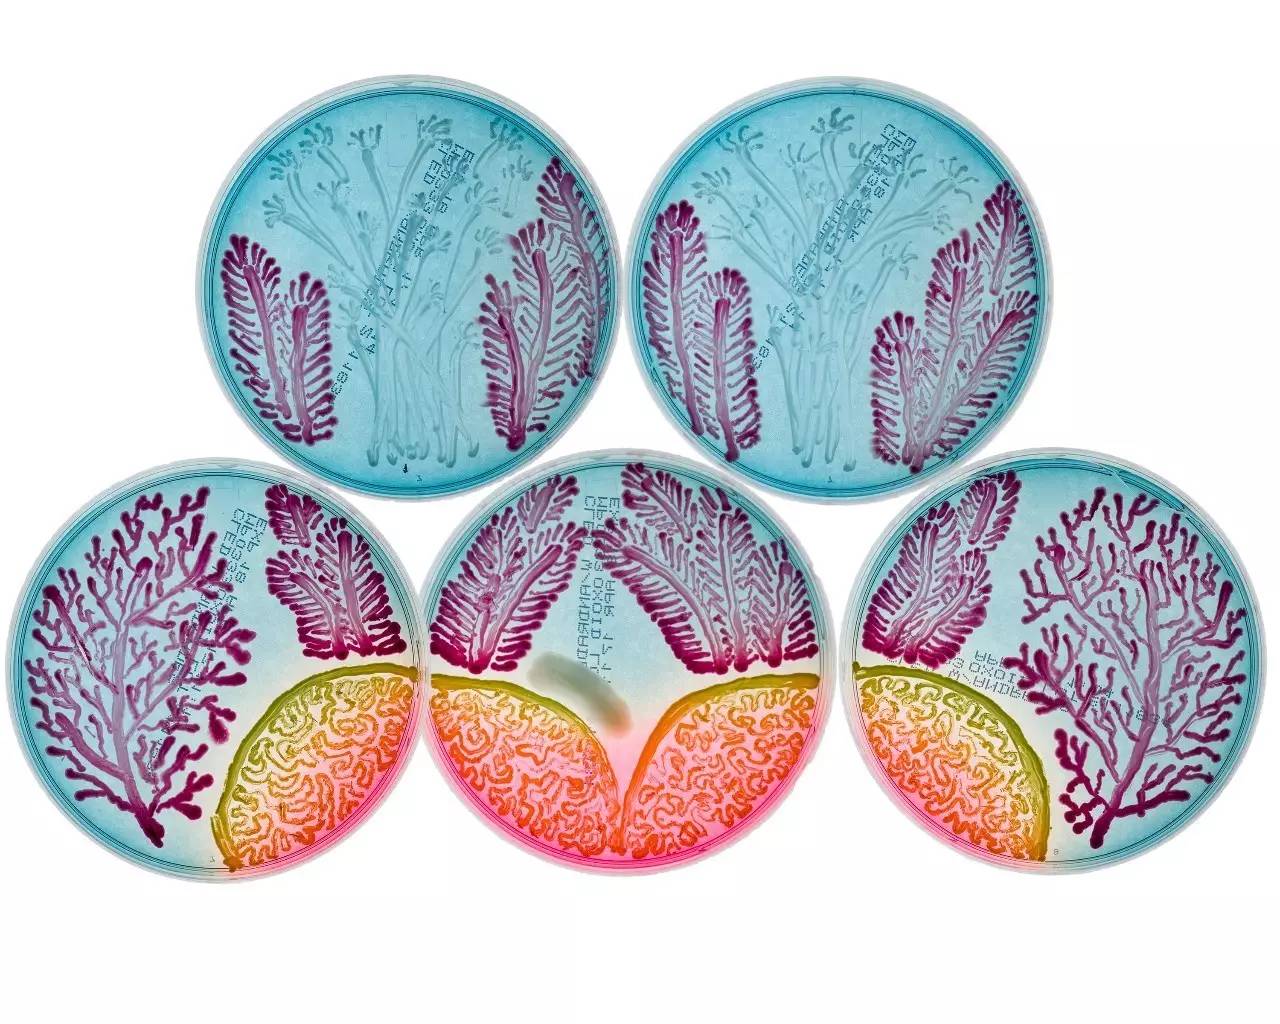 这些好看的培养皿,原来是细菌作的画